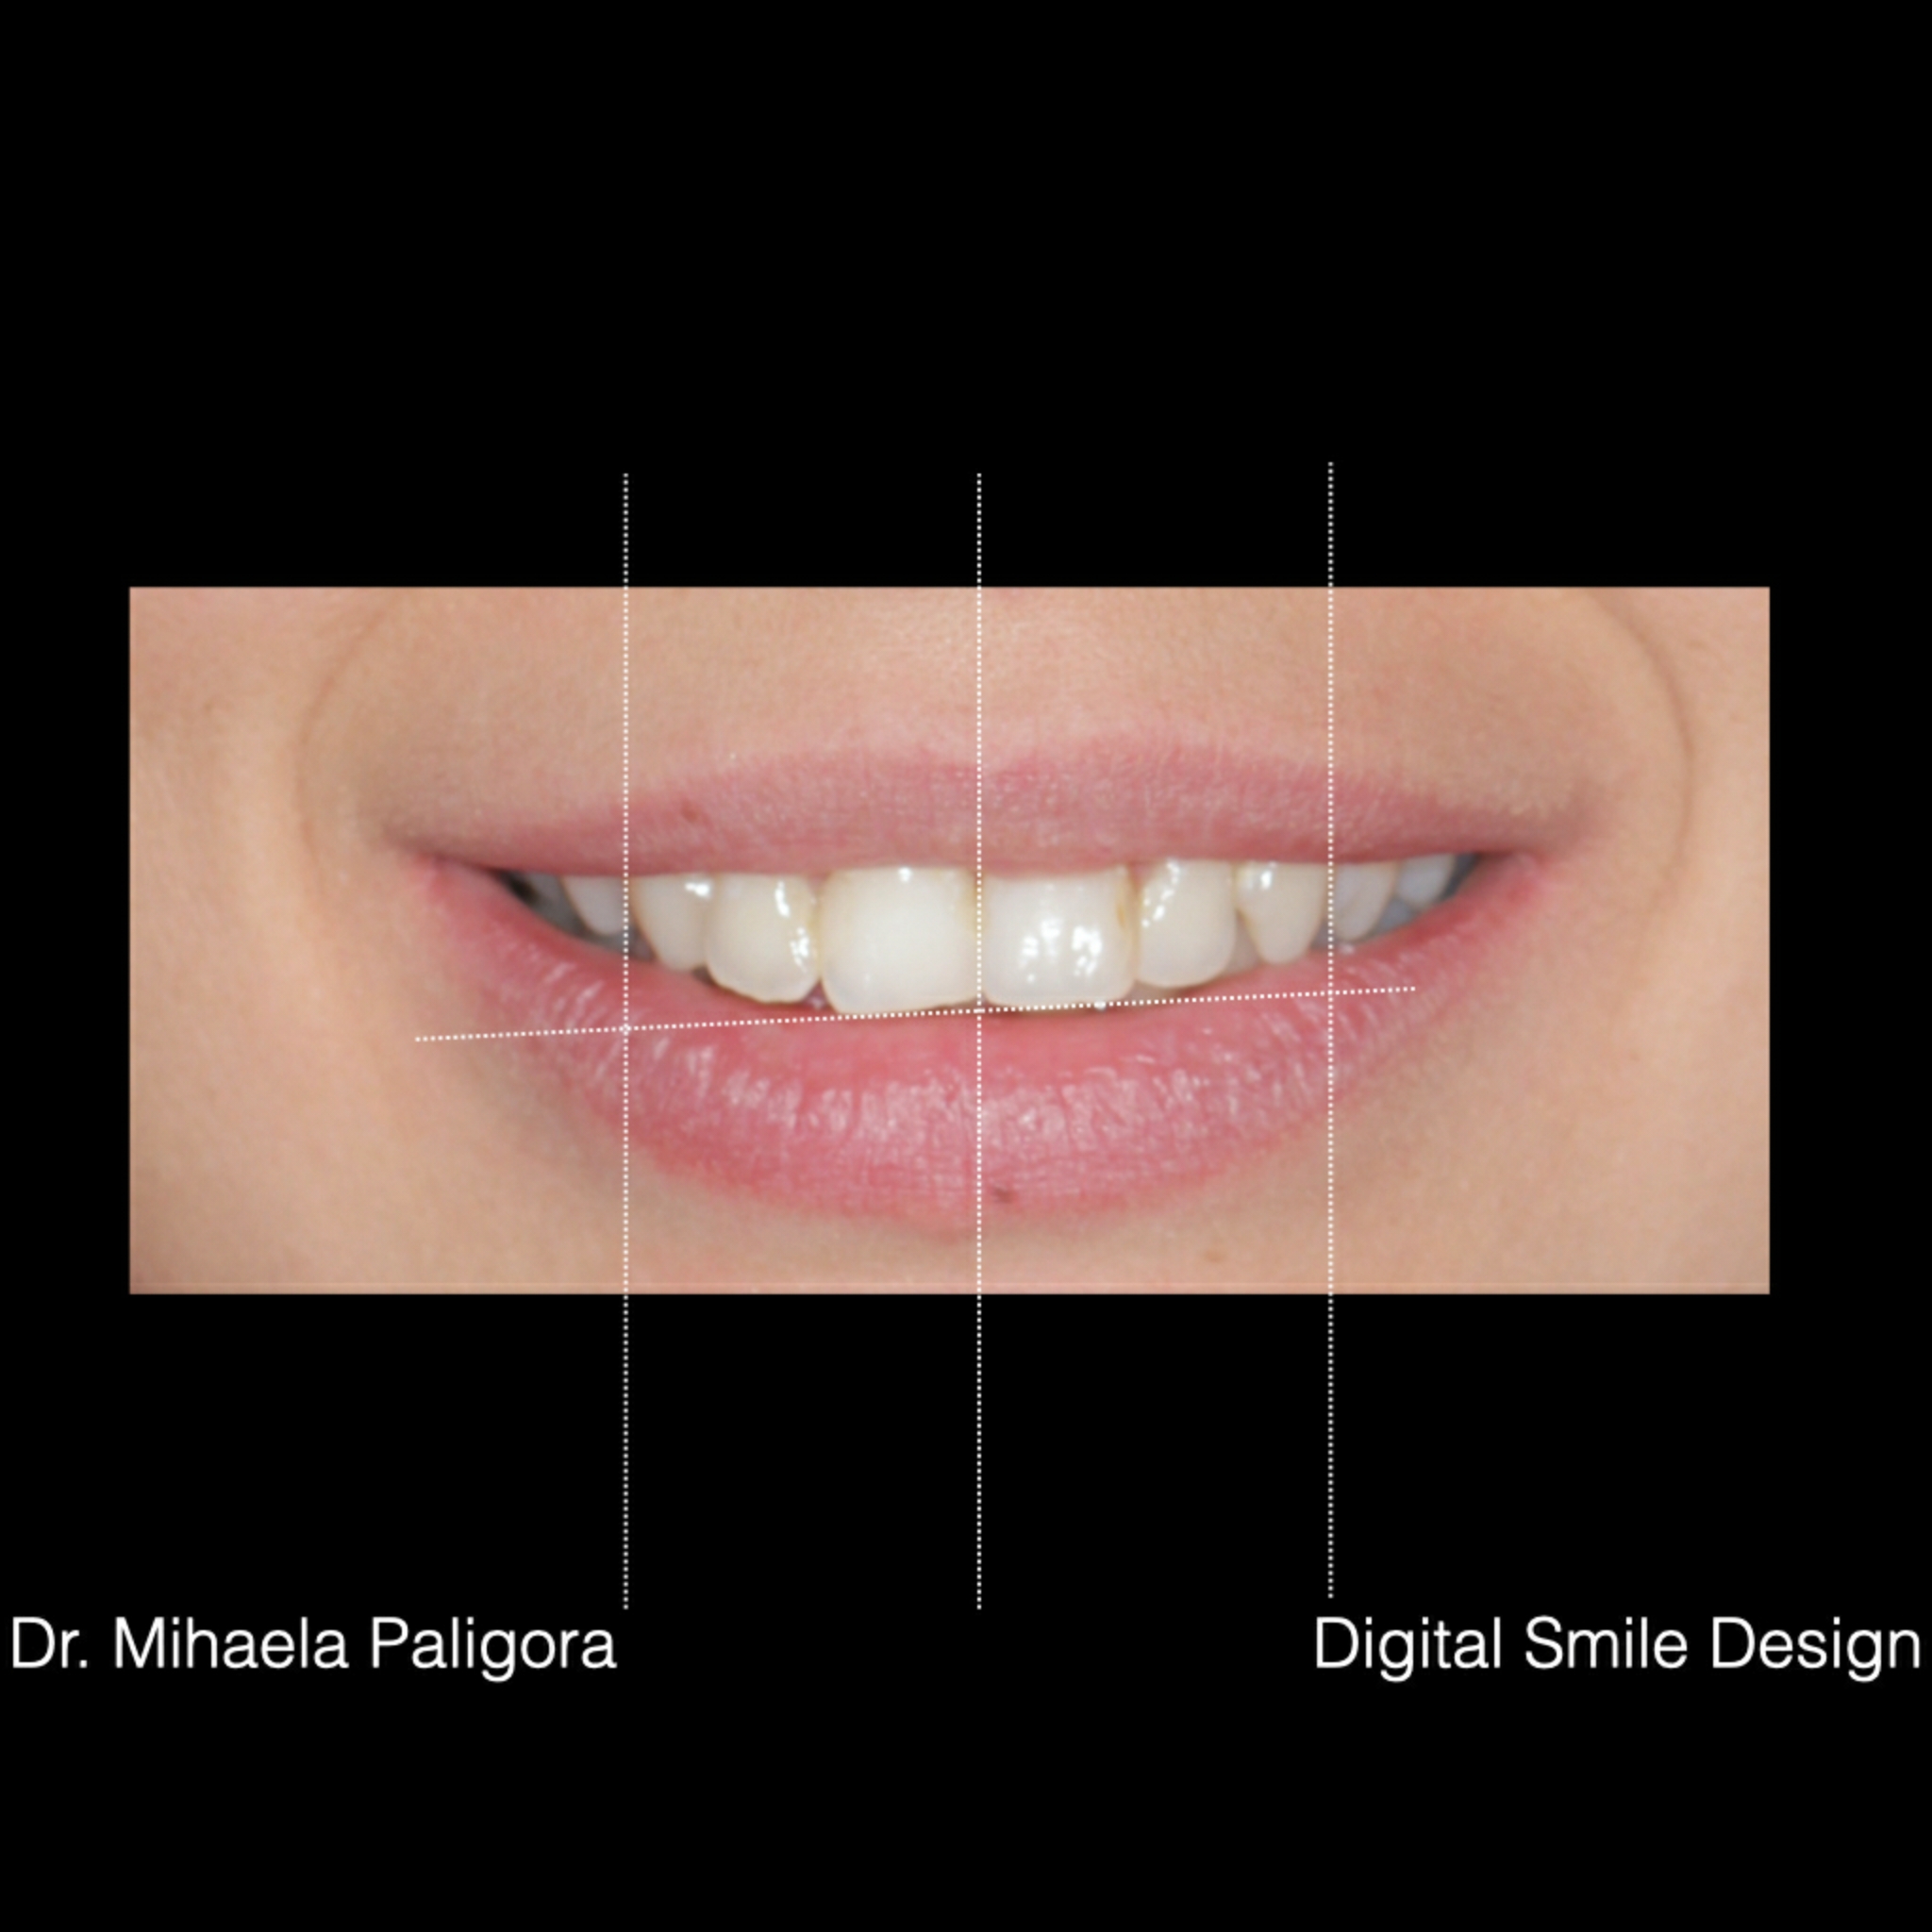 Digital Smile Design (DSD)